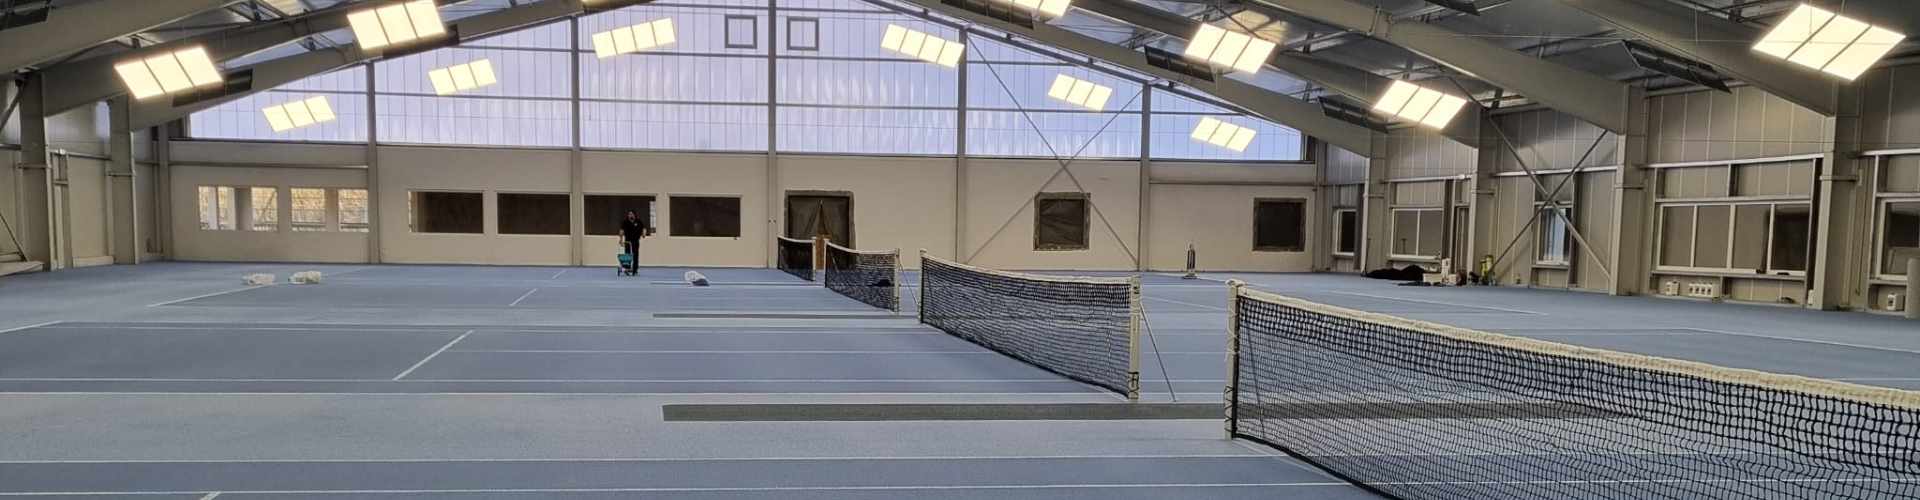 Panoramaansicht der neuen Tennishalle mit Netzen, Hightech Teppichbelag und moderner Beleuchtung